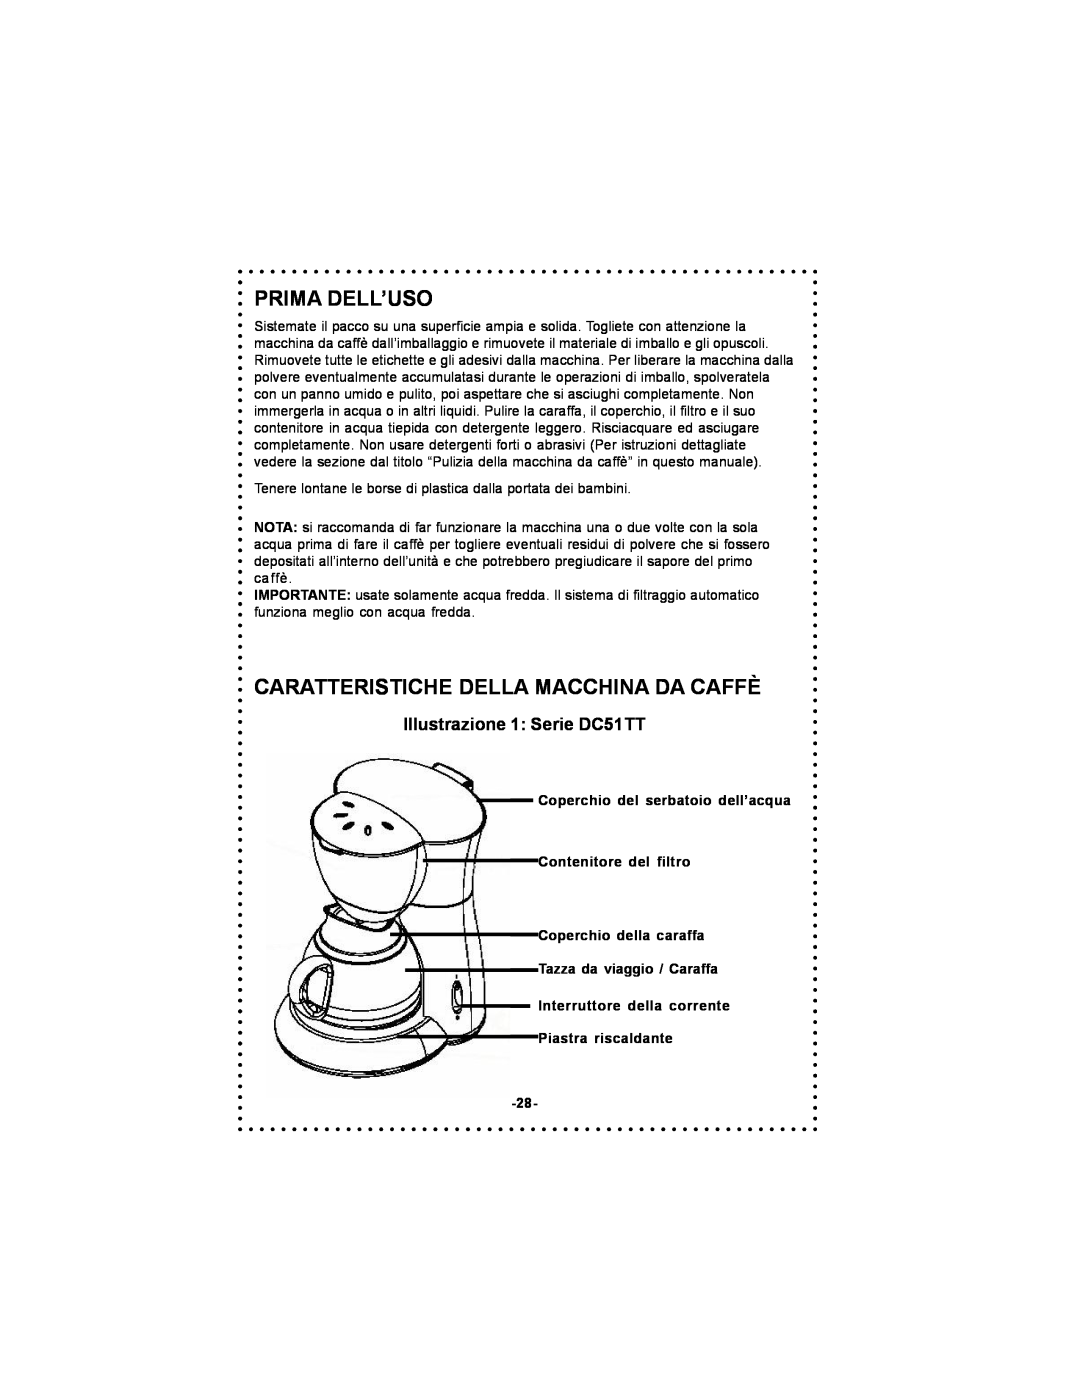 DeLonghi Coffee Makers Prima Dell’Uso, Caratteristiche Della Macchina Da Caffè, Illustrazione 1 Serie DC51TT 